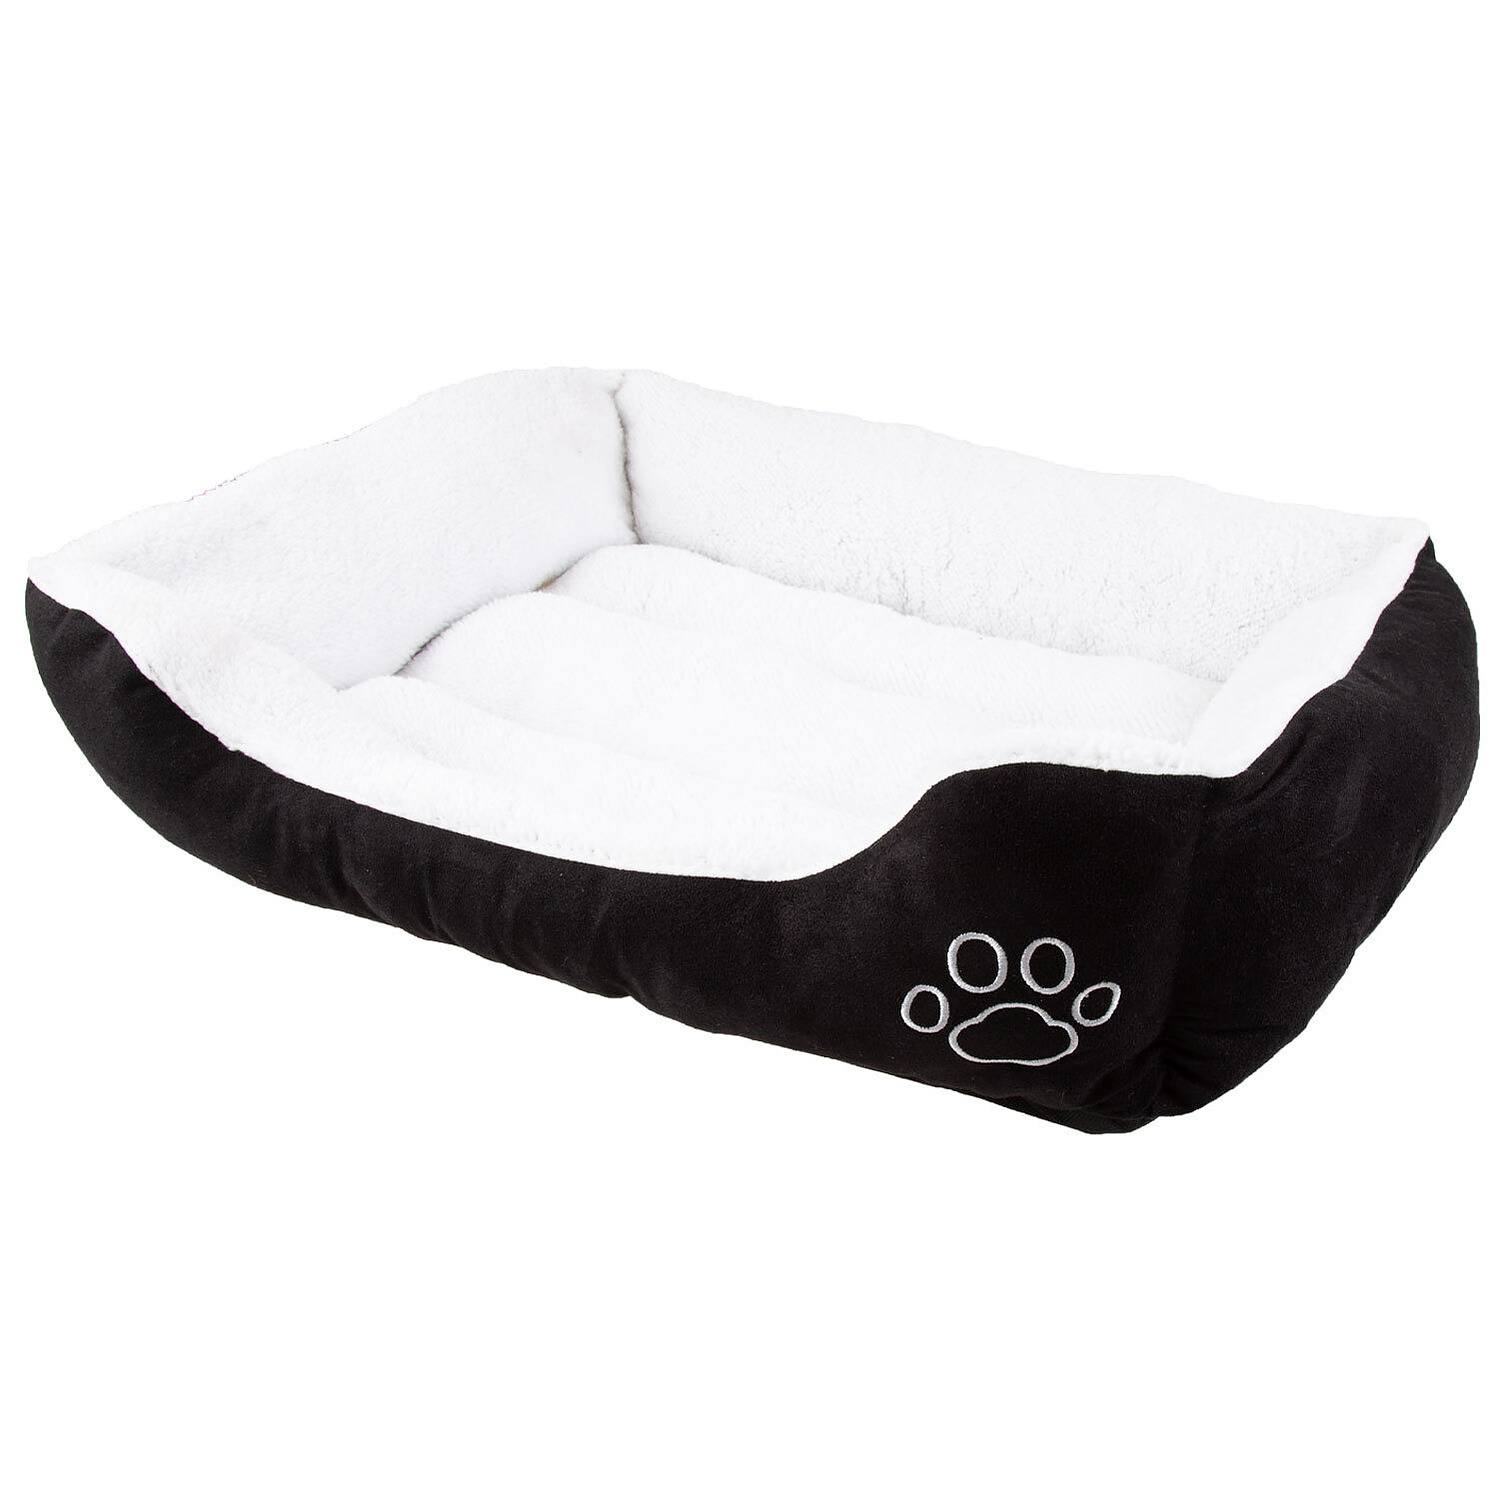 Faux suede, rectangular pet bed, medium, black & white